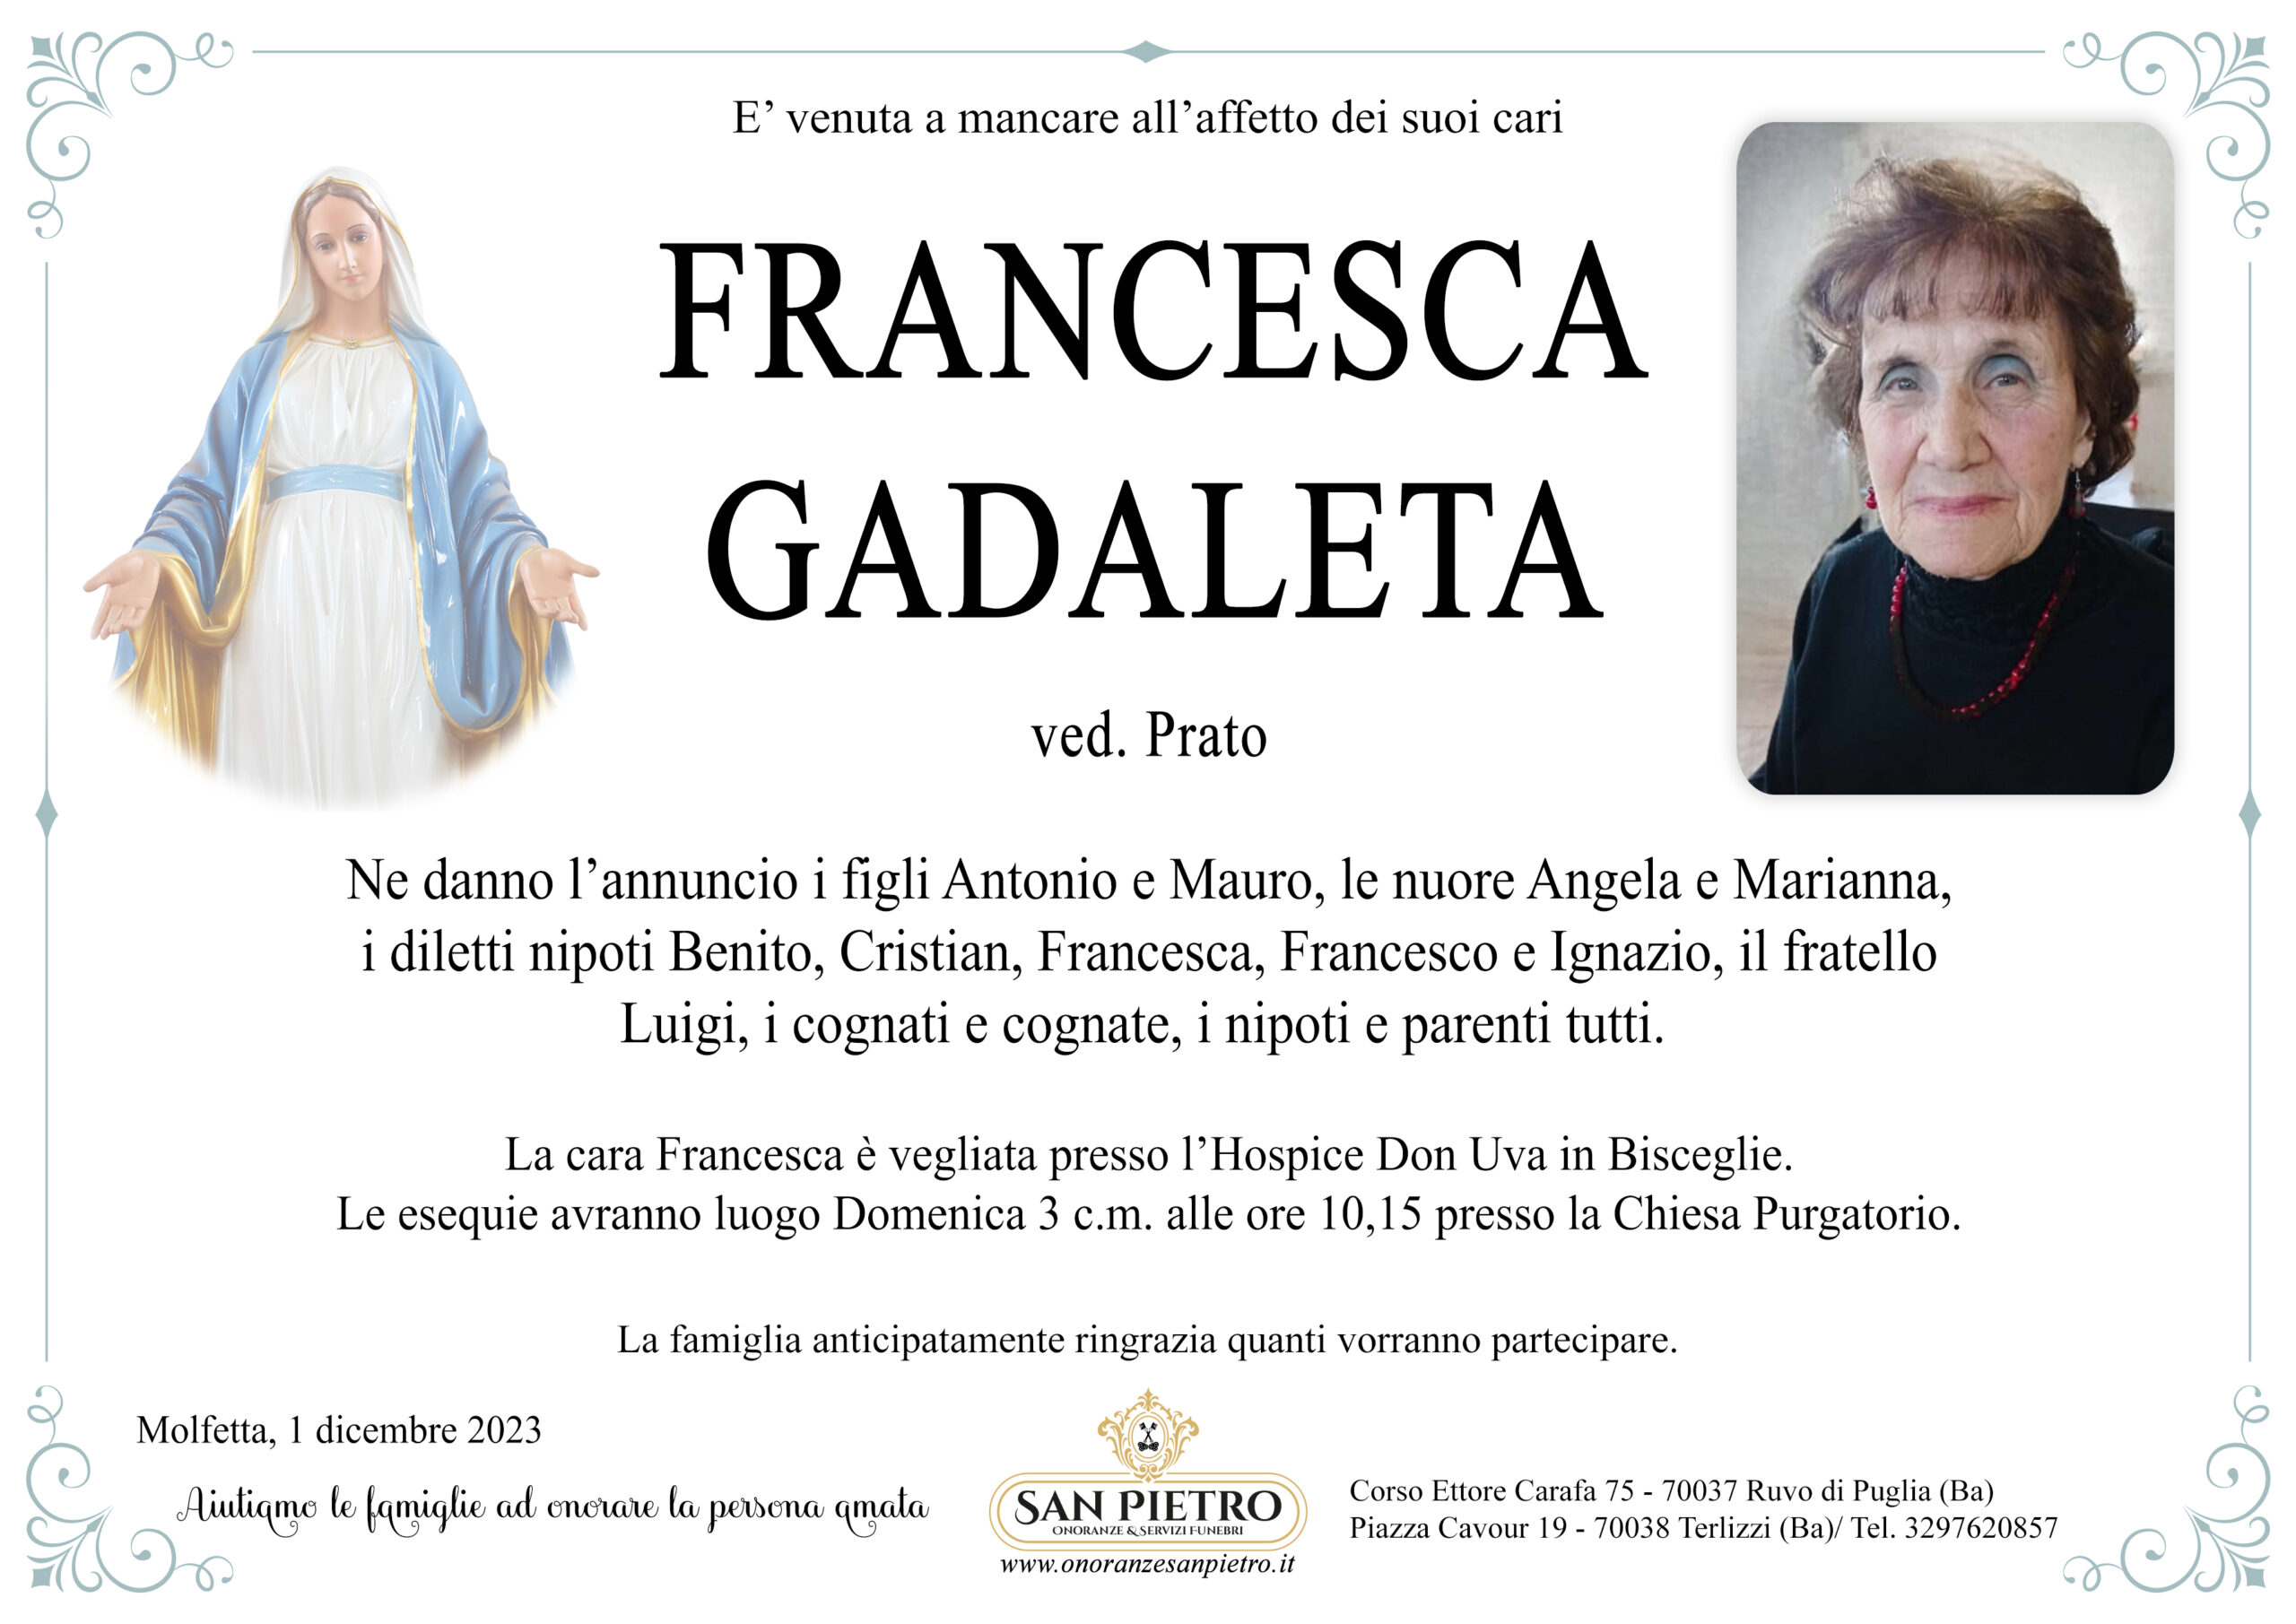 Francesca Gadaleta ved. Prato – Onoranze San Pietro – Servizi Funebri